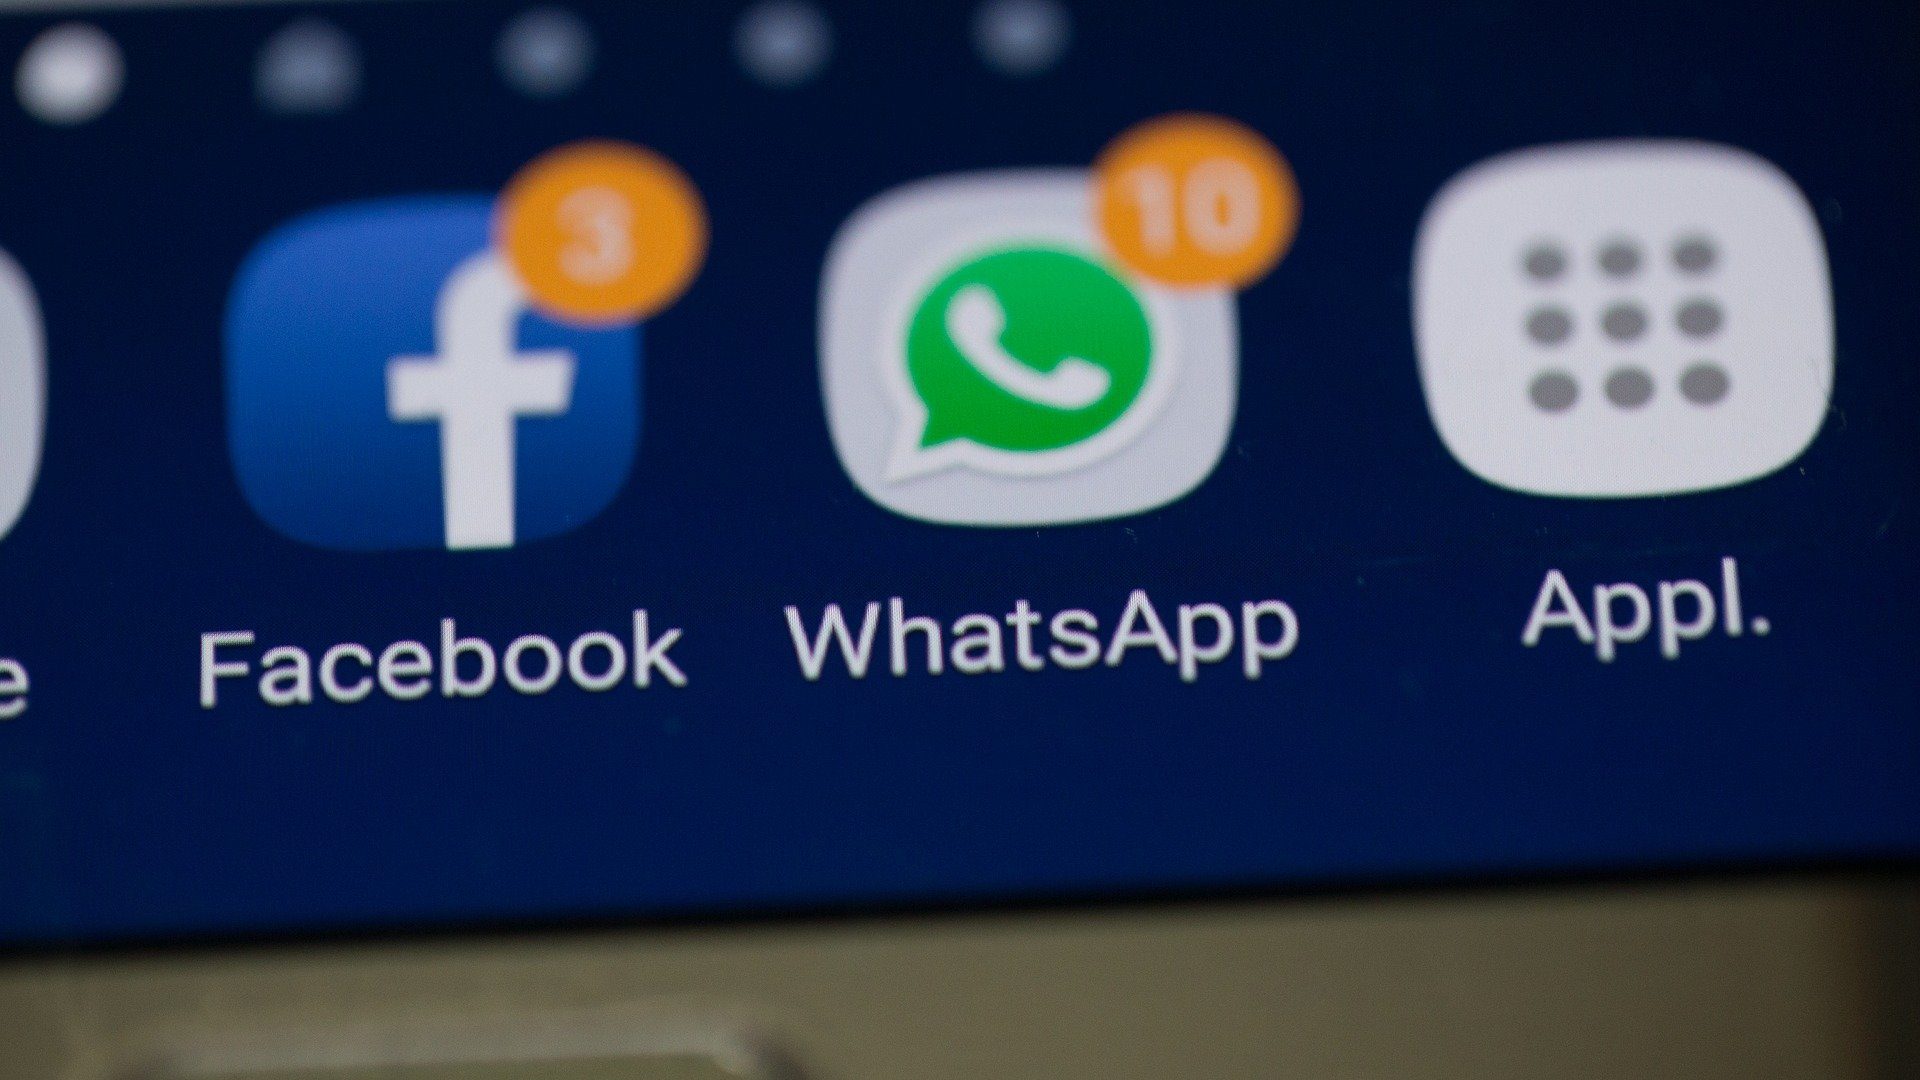 WhatsApp renuncia a bloquear la app de quienes no acepten nuevas reglas | Aplicaciones y Software